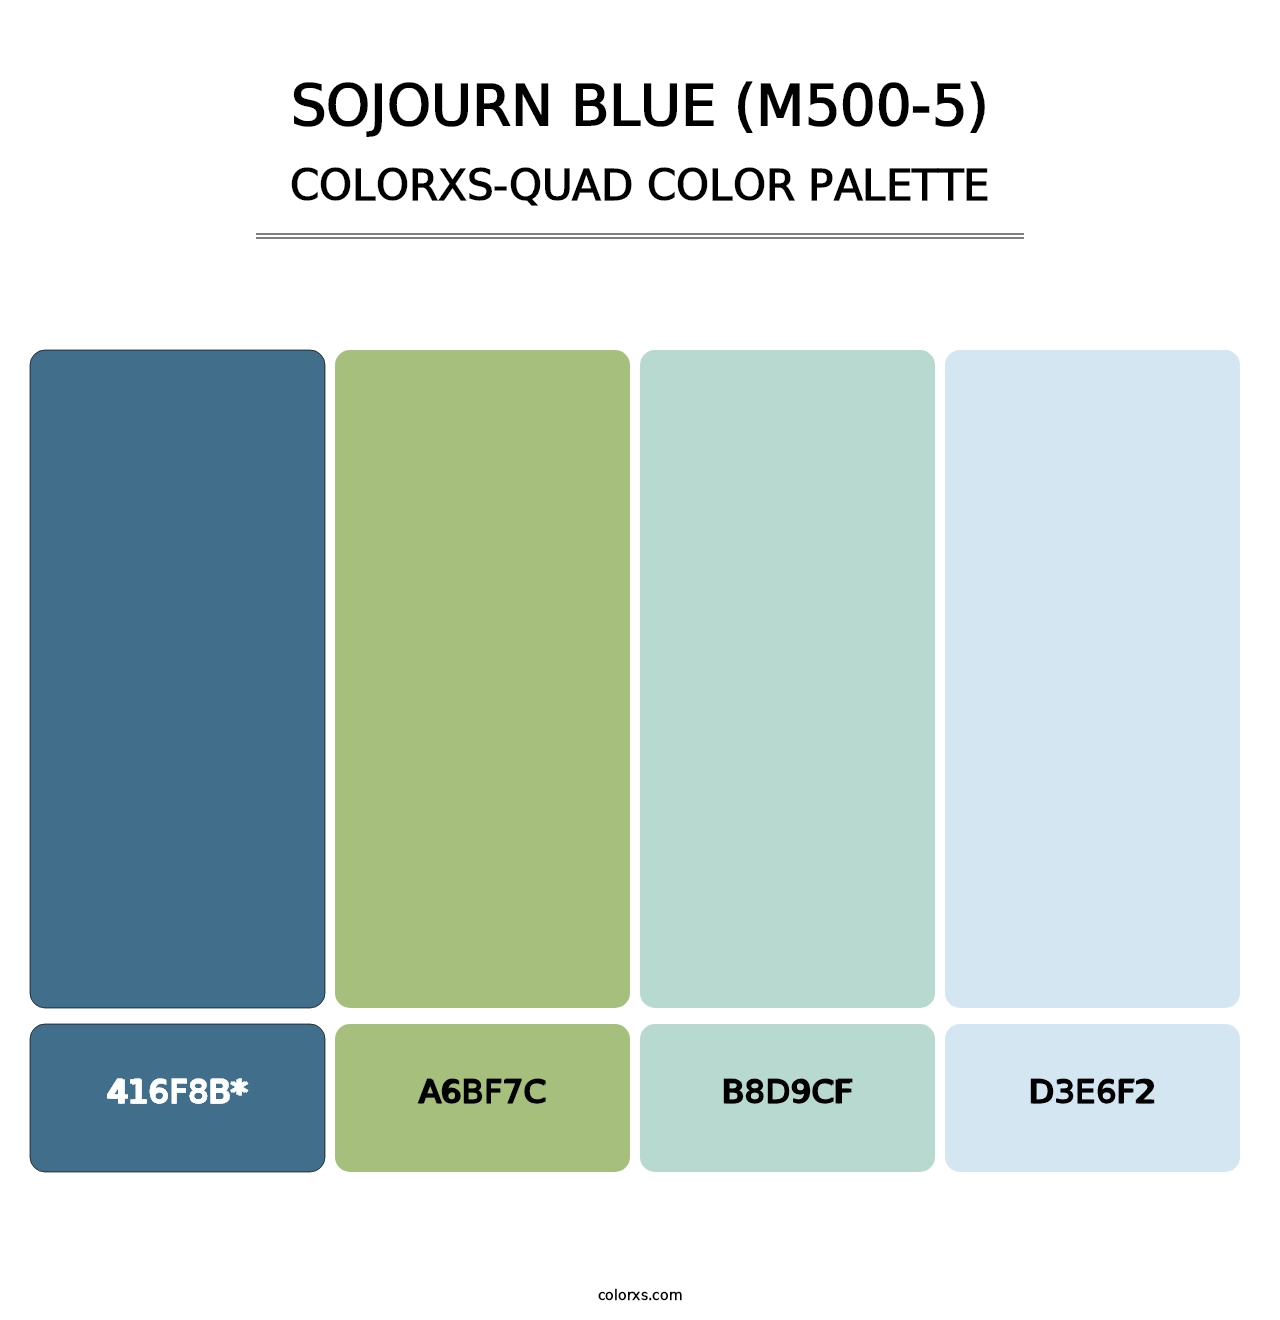 Sojourn Blue (M500-5) - Colorxs Quad Palette